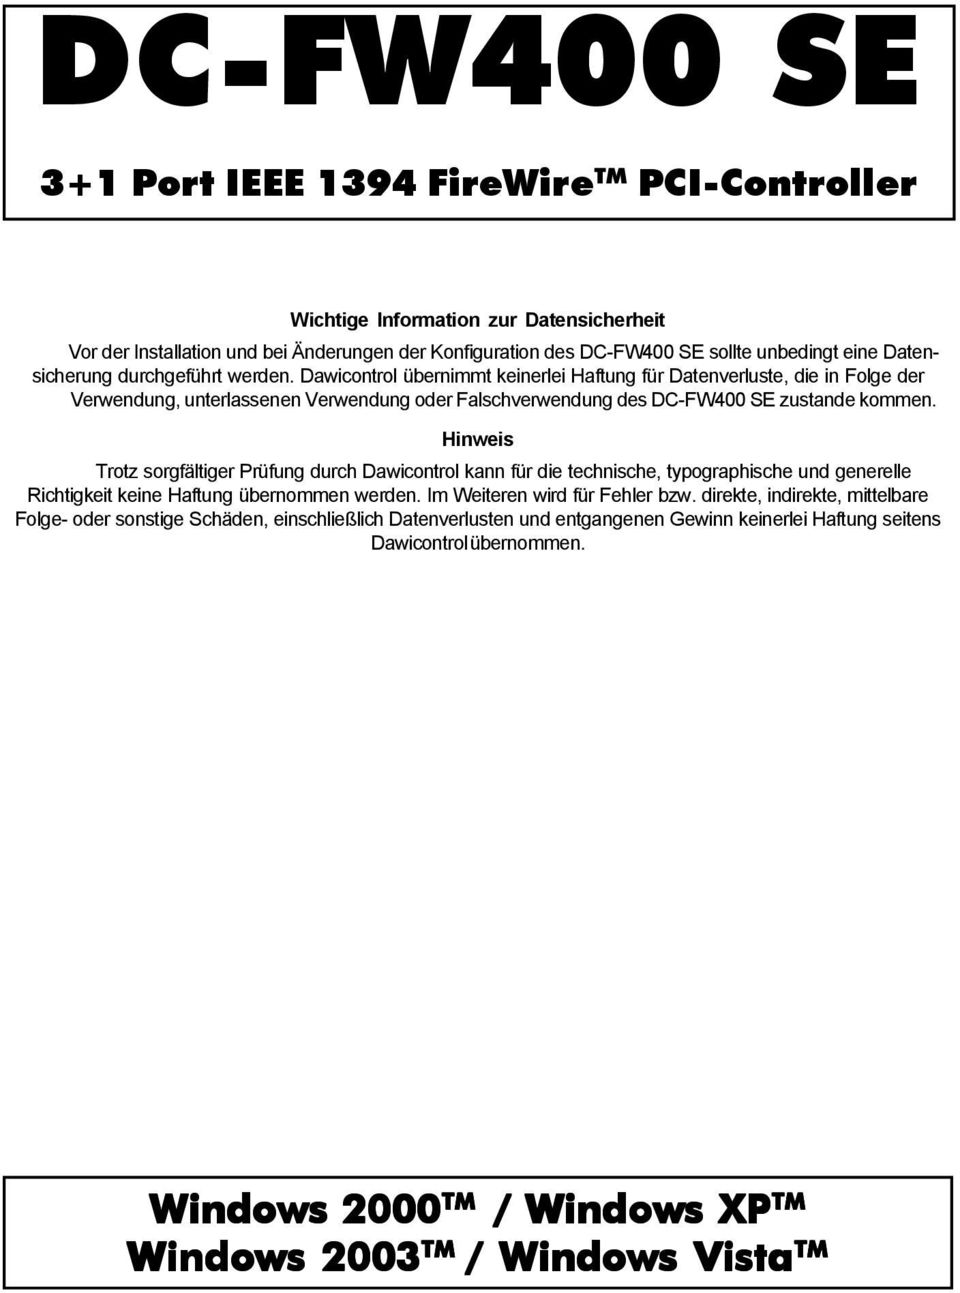 Dawicontrol übernimmt keinerlei Haftung für Datenverluste, die in Folge der Verwendung, unterlassenen Verwendung oder Falschverwendung des DC-FW400 SE zustande kommen.